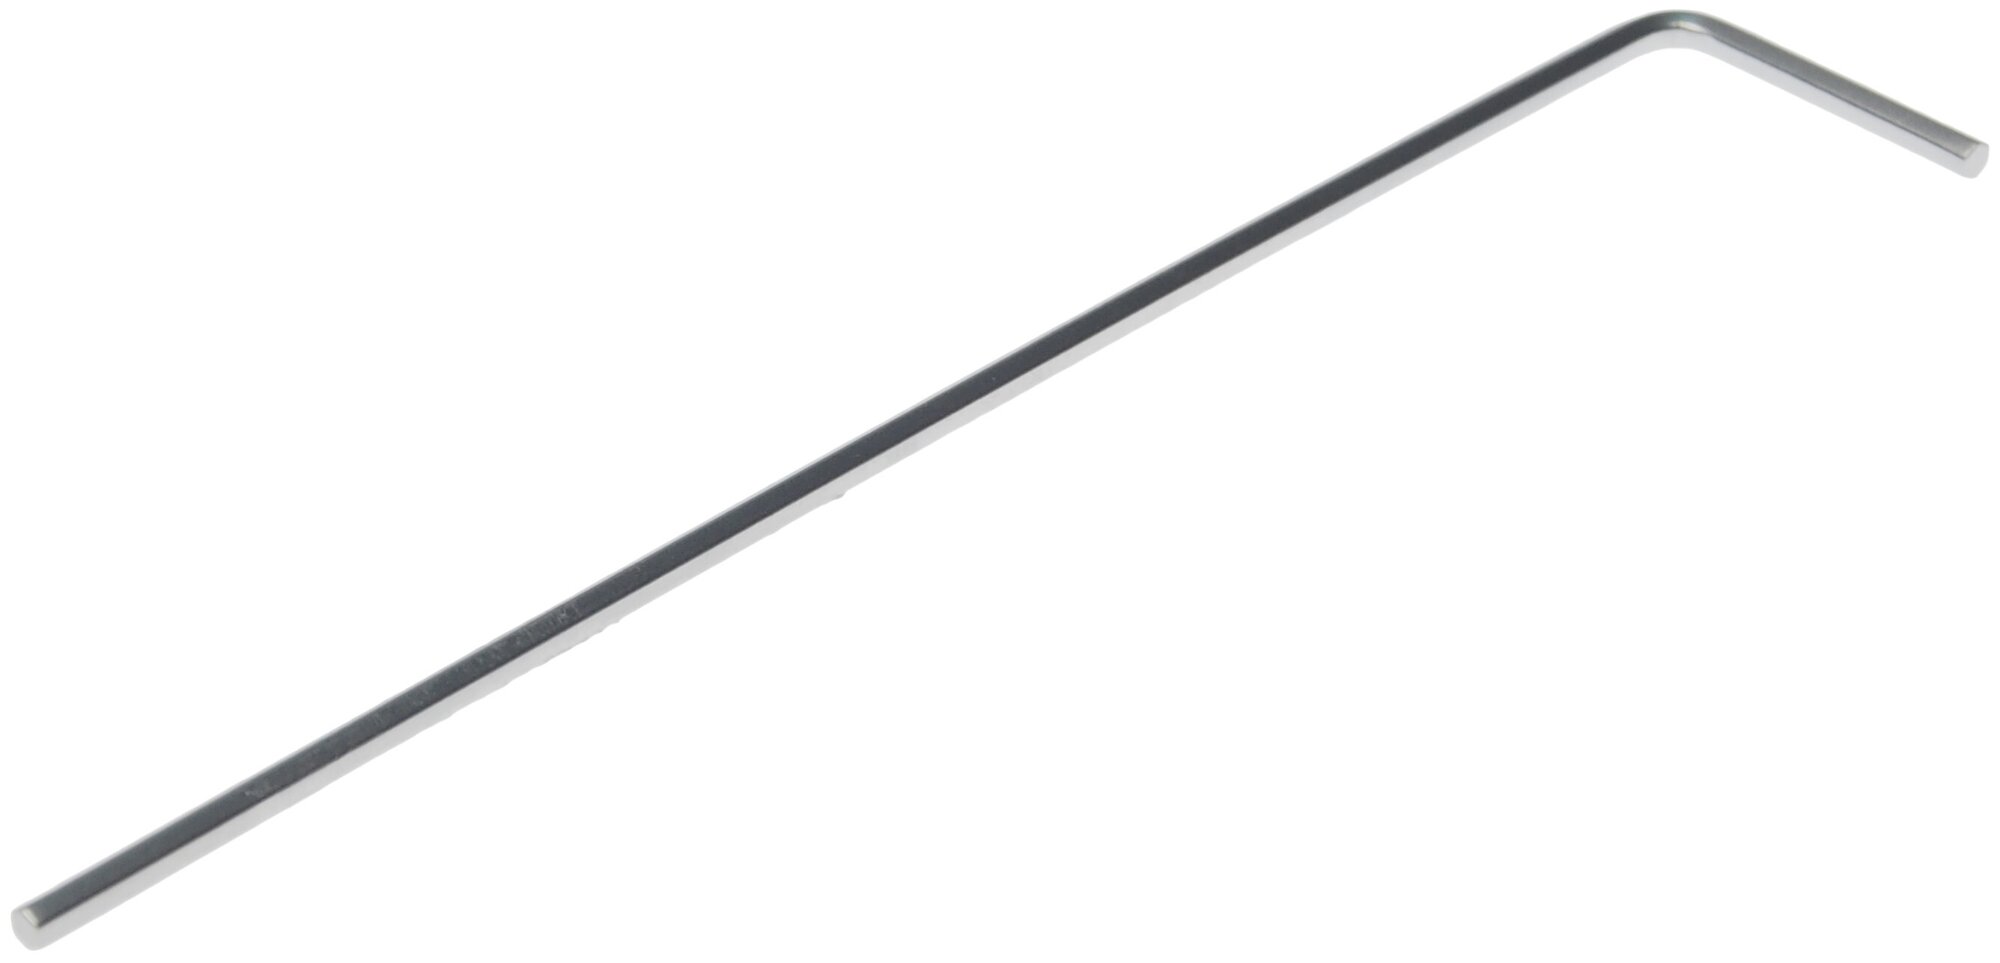 Ключ шестигранный 1.5мм Г-образный удлиненный эврика